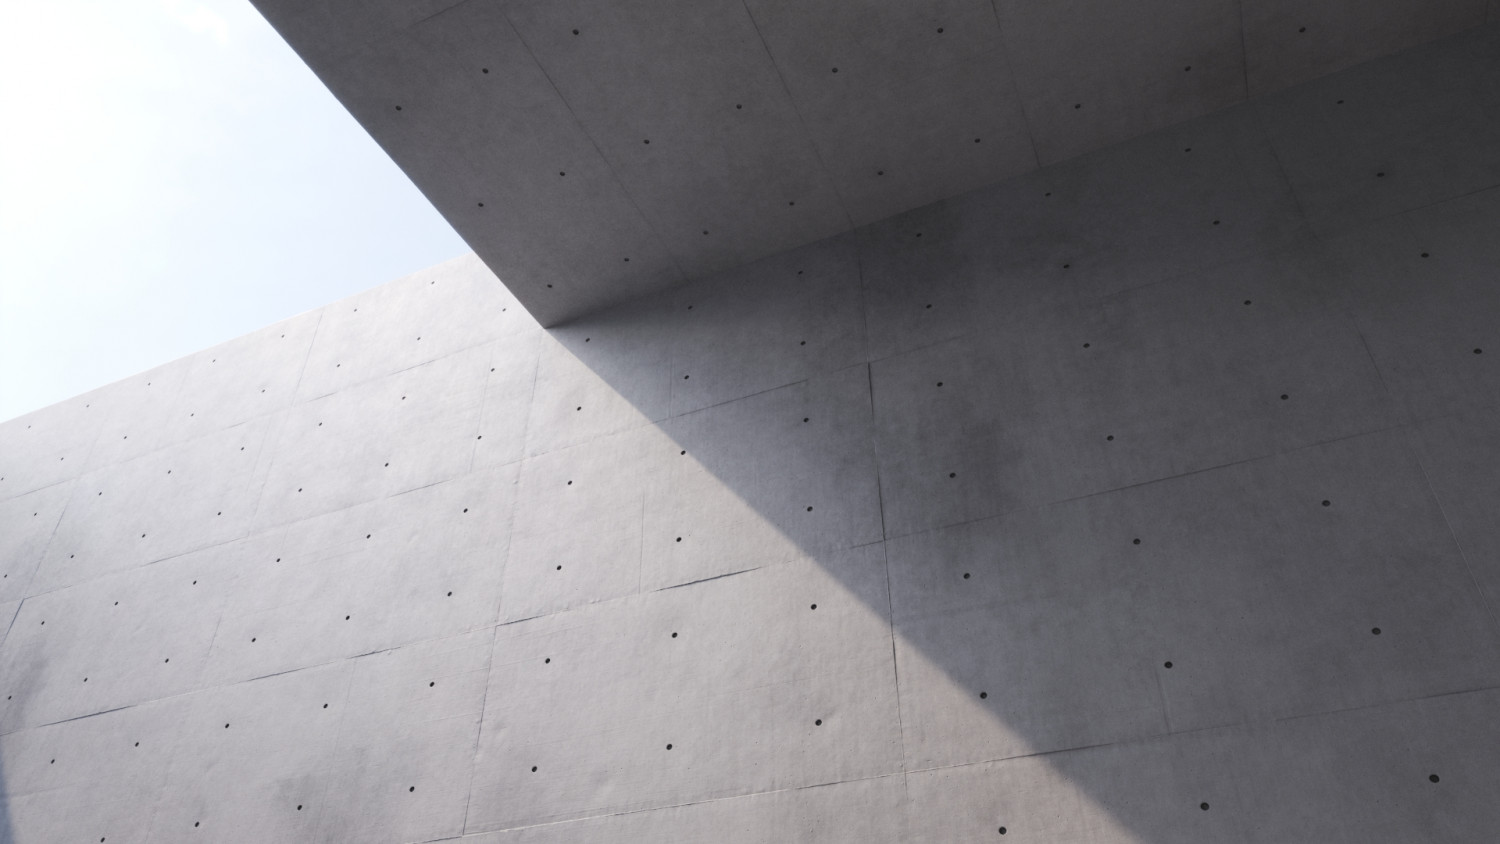 Tadao Ando cement wall texture